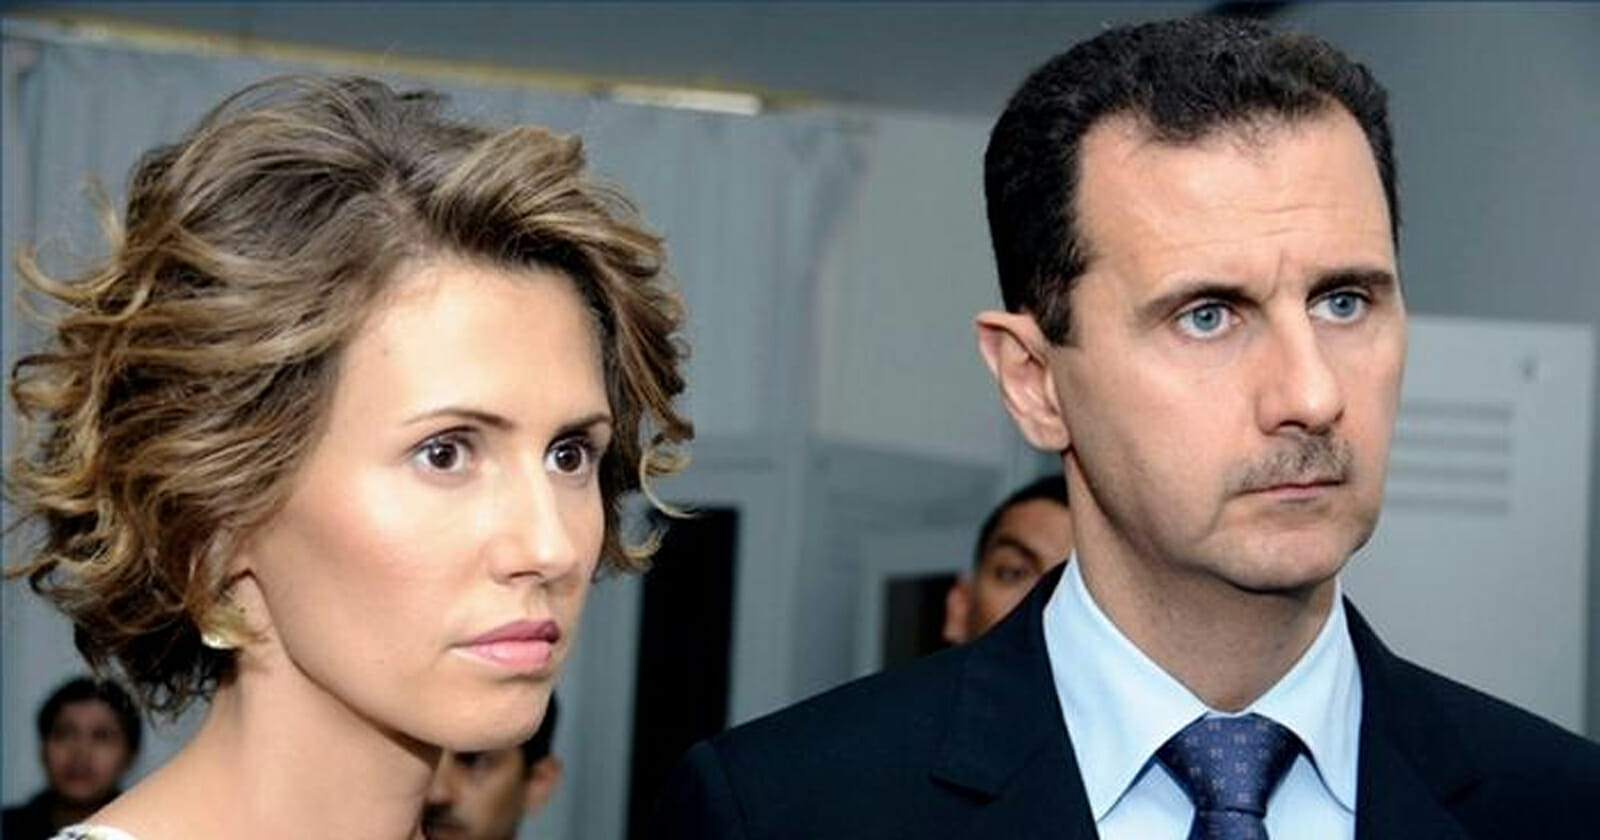 أسماء الأسد زوجة رأس النظام السوري بشار الأسد watanserb.com